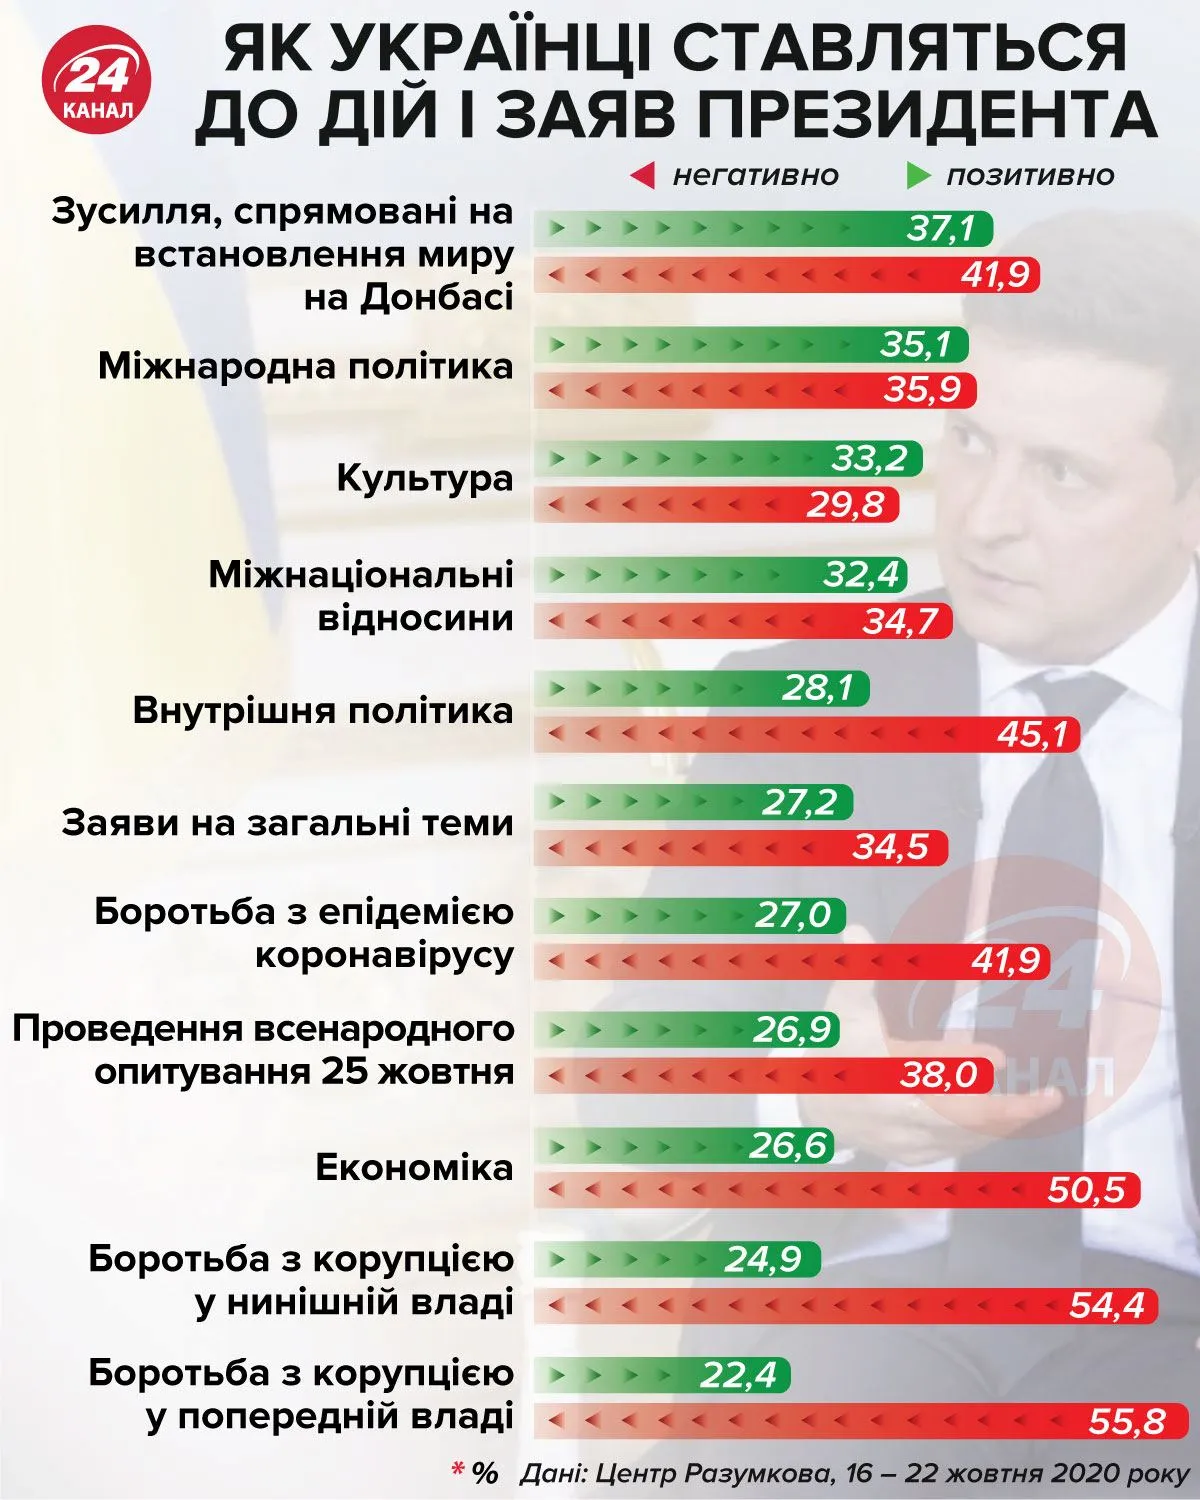 Как украинцы относятся к президенту инфографика 24 канал